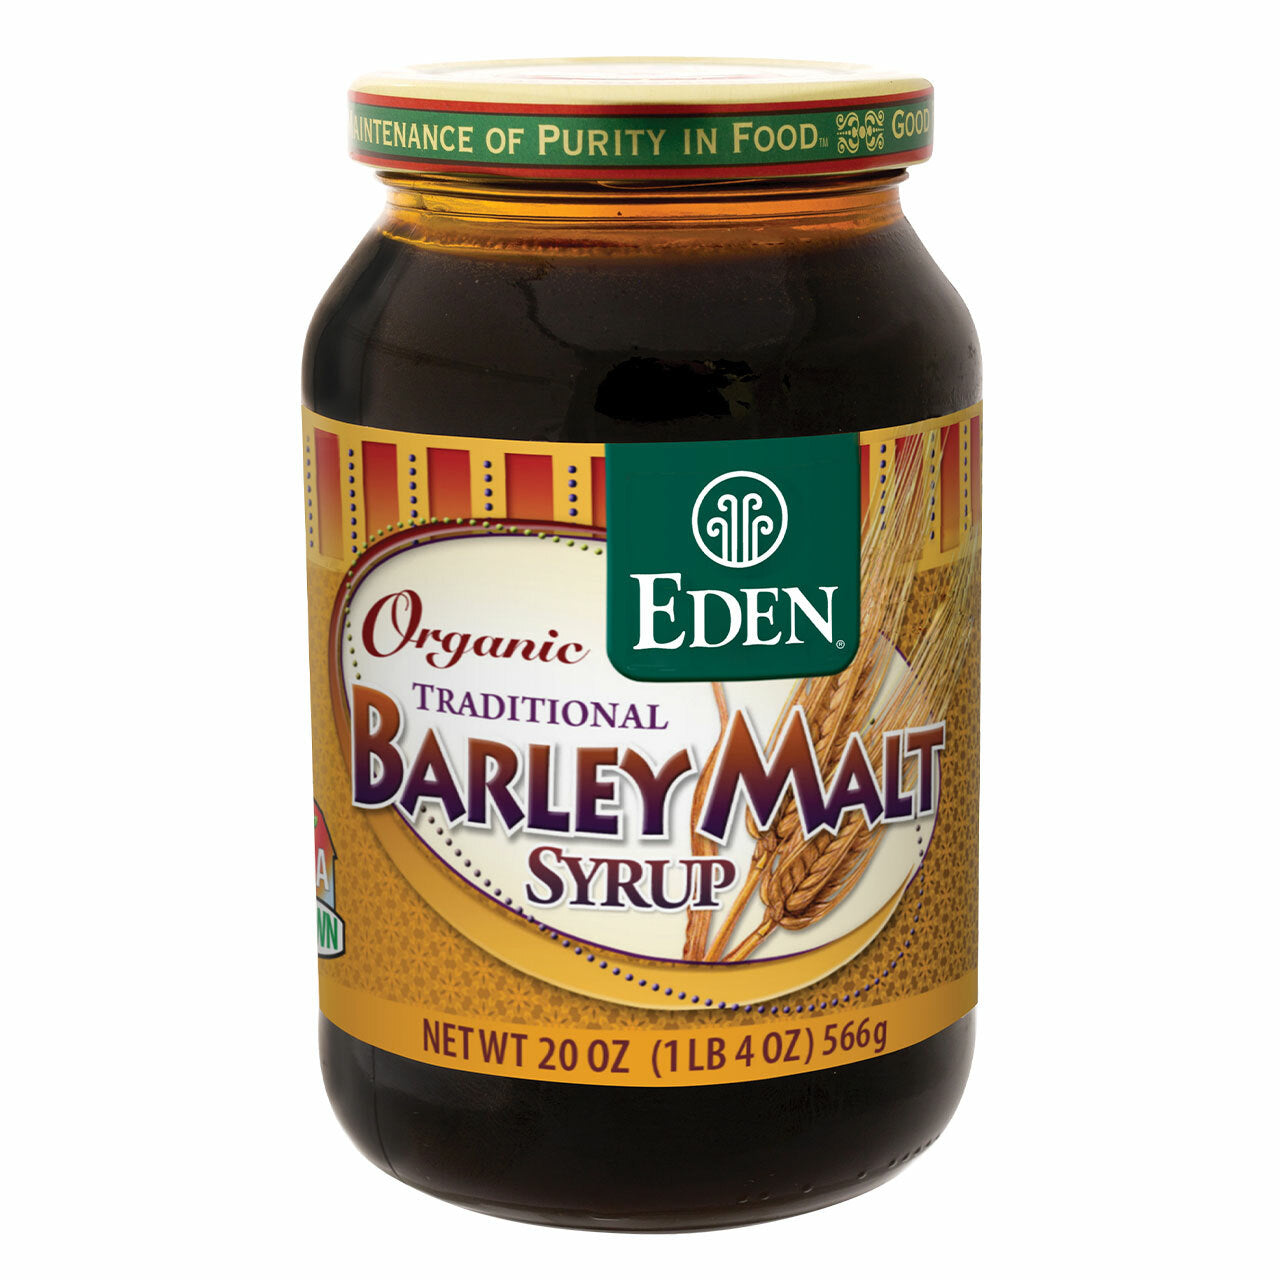 Eden Organic Traditional Barley Malt Syrup